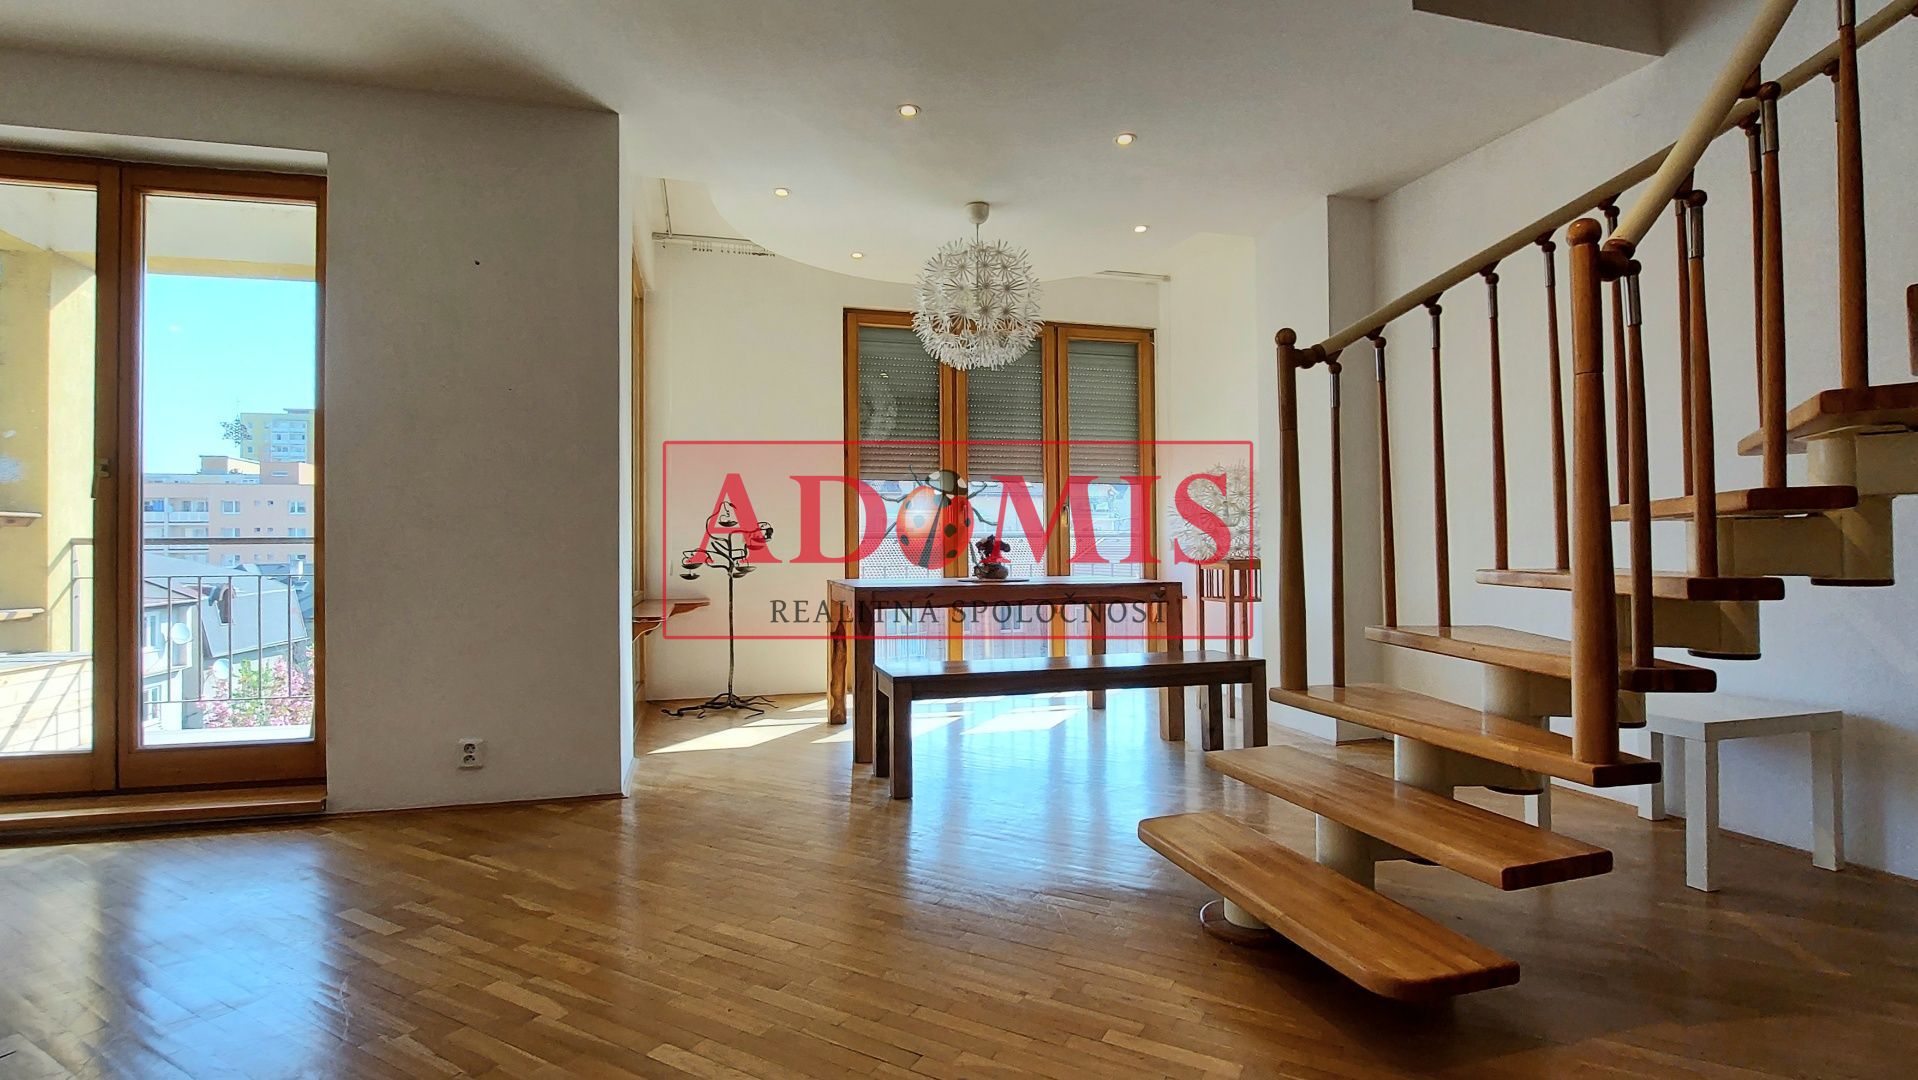 ADOMIS -  predáme 5-izb. byt,3-podlažný(mezonet),dvojgaráž,uzamknuté parkovanie,2x kúpelňa,2x balkón,TOP lokalita, Brezová ulica, Košice.